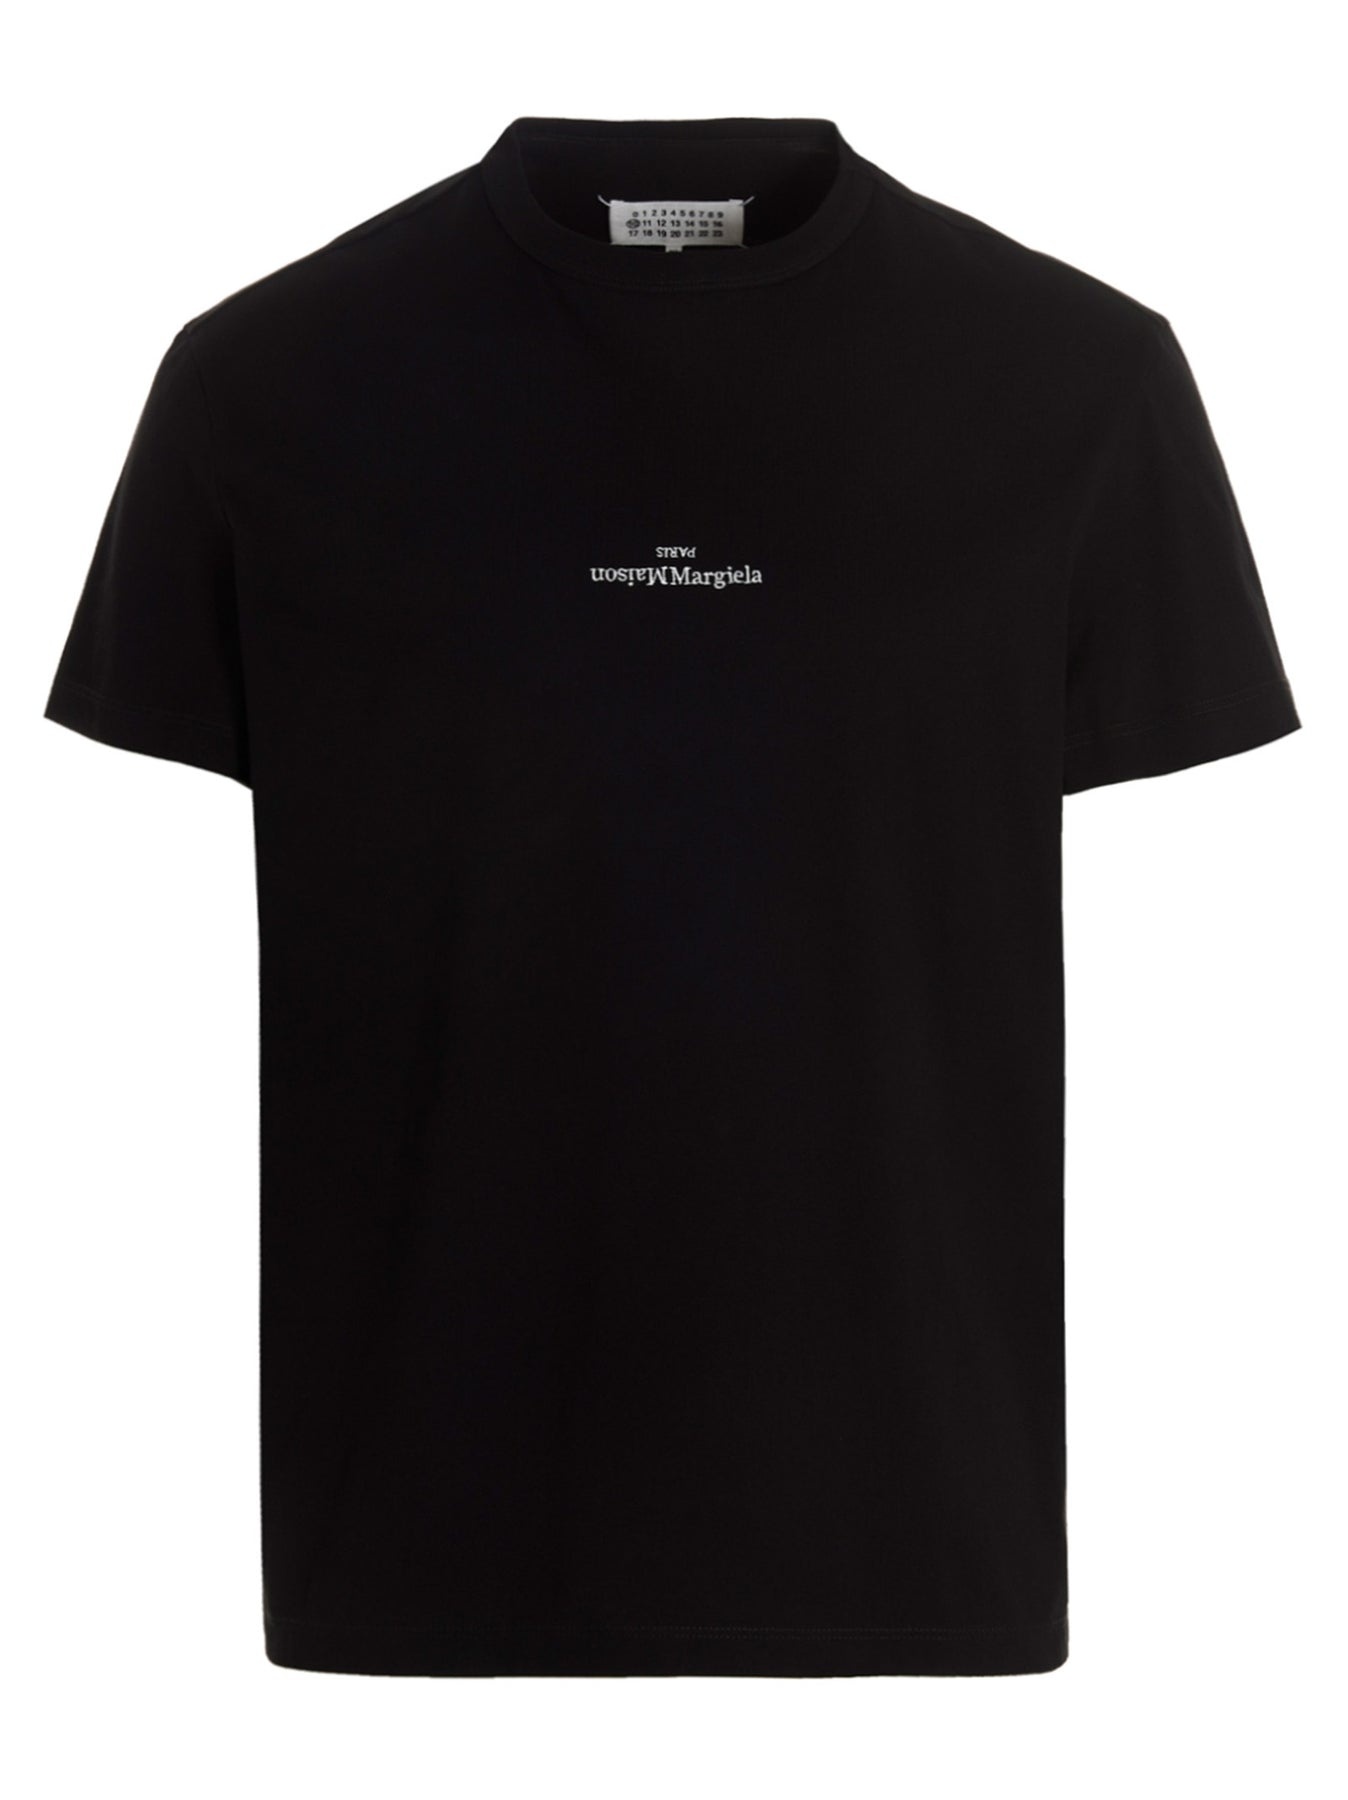 Maison Margiela Paris T-Shirt Black - 1